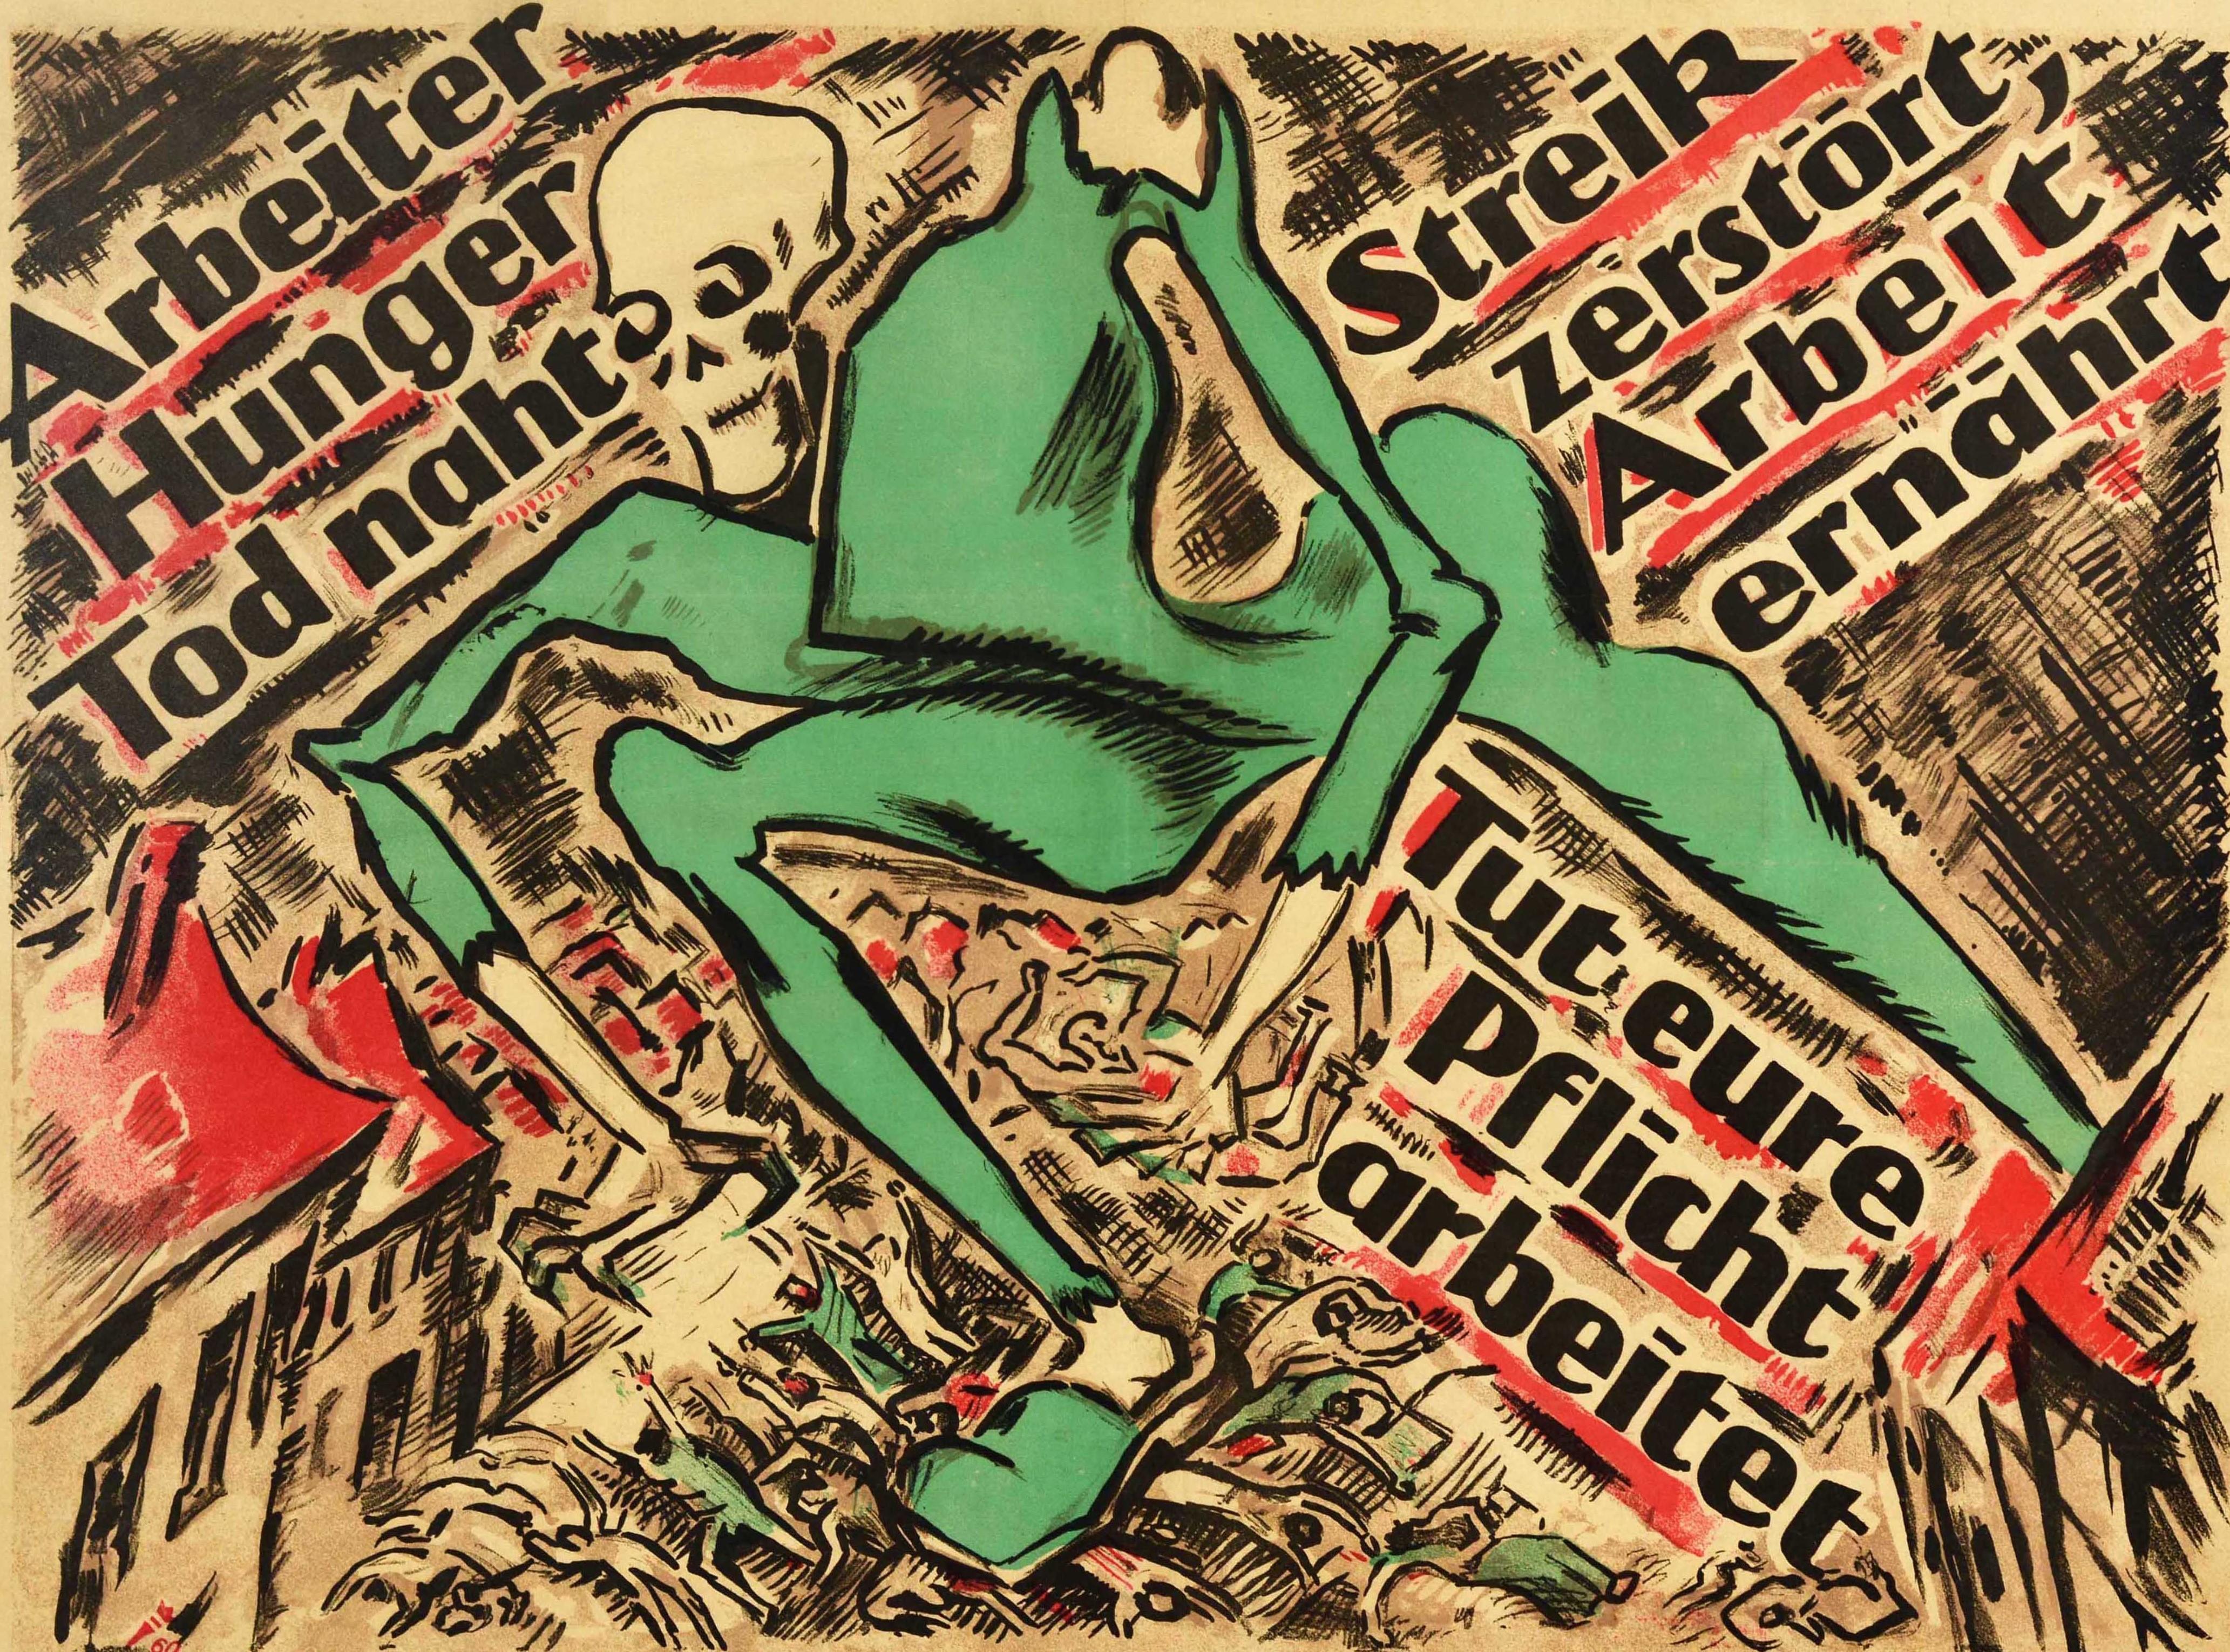 Originales antibolschewistisches Propagandaplakat des deutschen Designers Heinz Fuchs (1886-1961), das eine Skelettfigur in Grün zeigt, die über Menschen und Häuser schreitet, mit dem diagonalen Text in fetter schwarzer Schrift - Arbeiter Hunger Tod